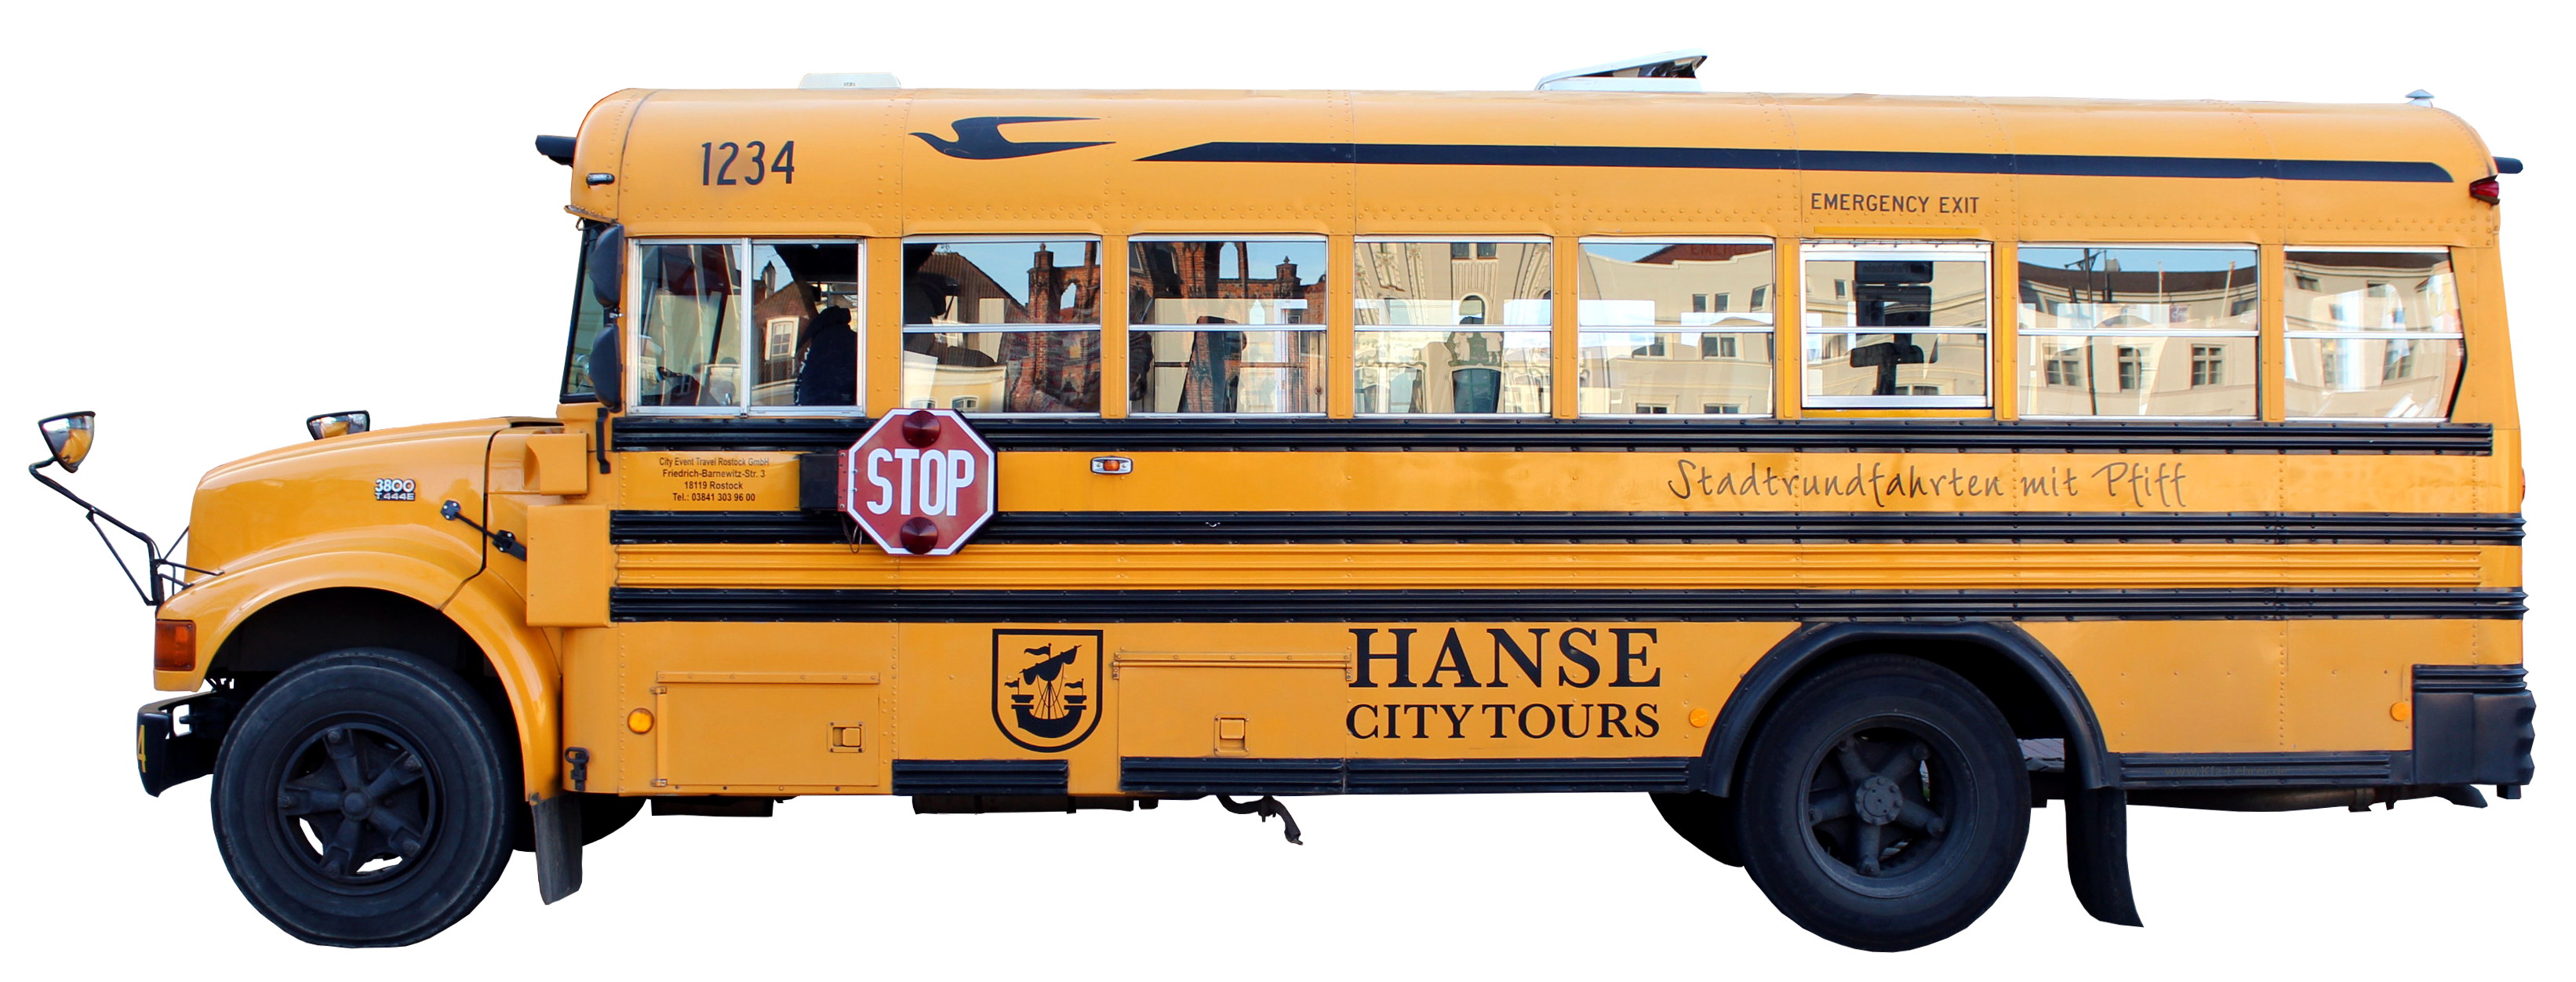 amerikanischer Schulbus umgebaut für Stadtrundfahrten